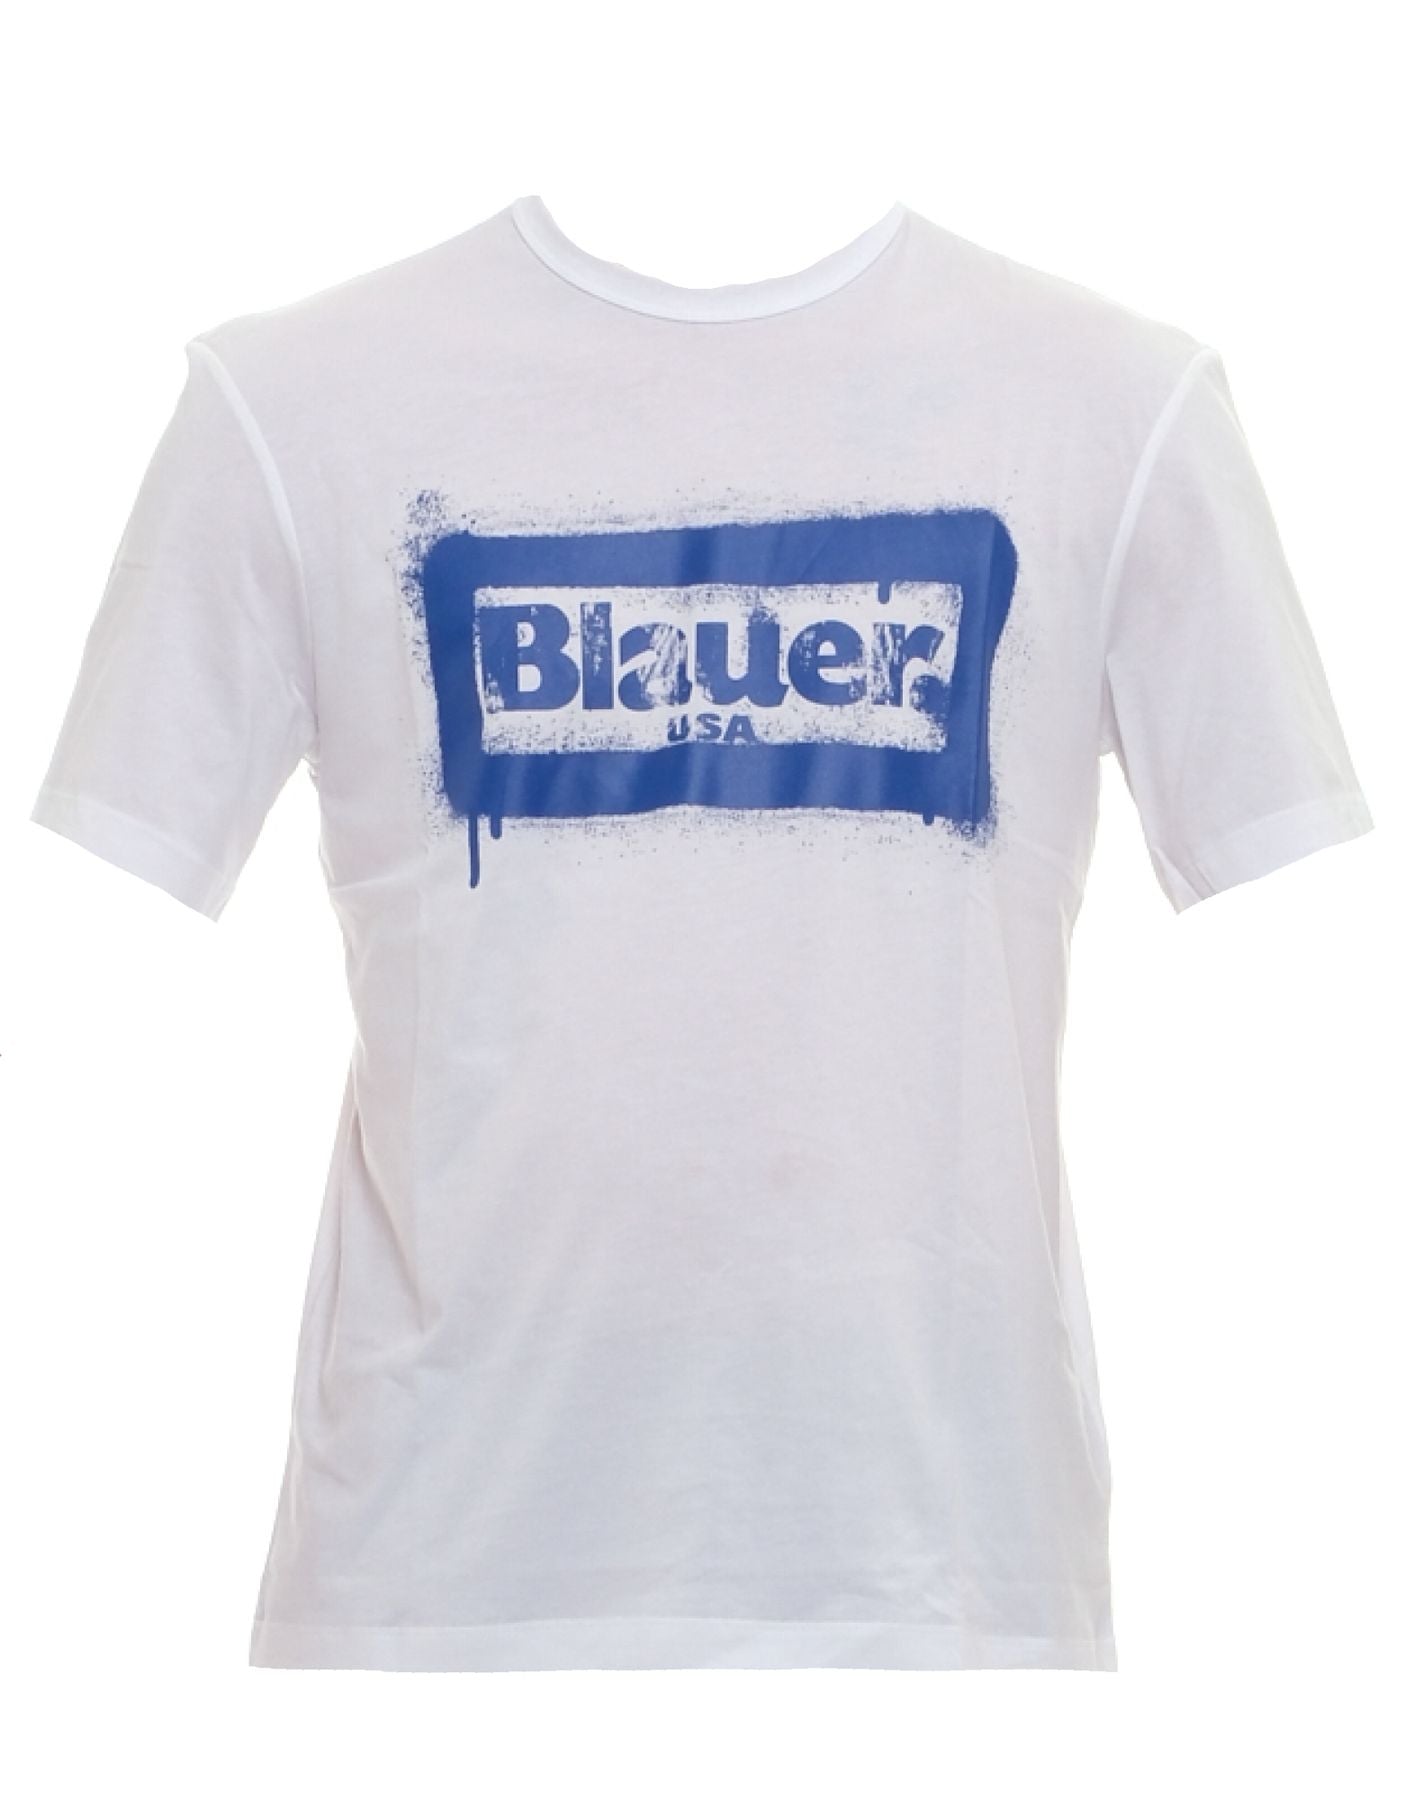 T-shirt da uomo 24SBLUH02147 004547 100 Blauer